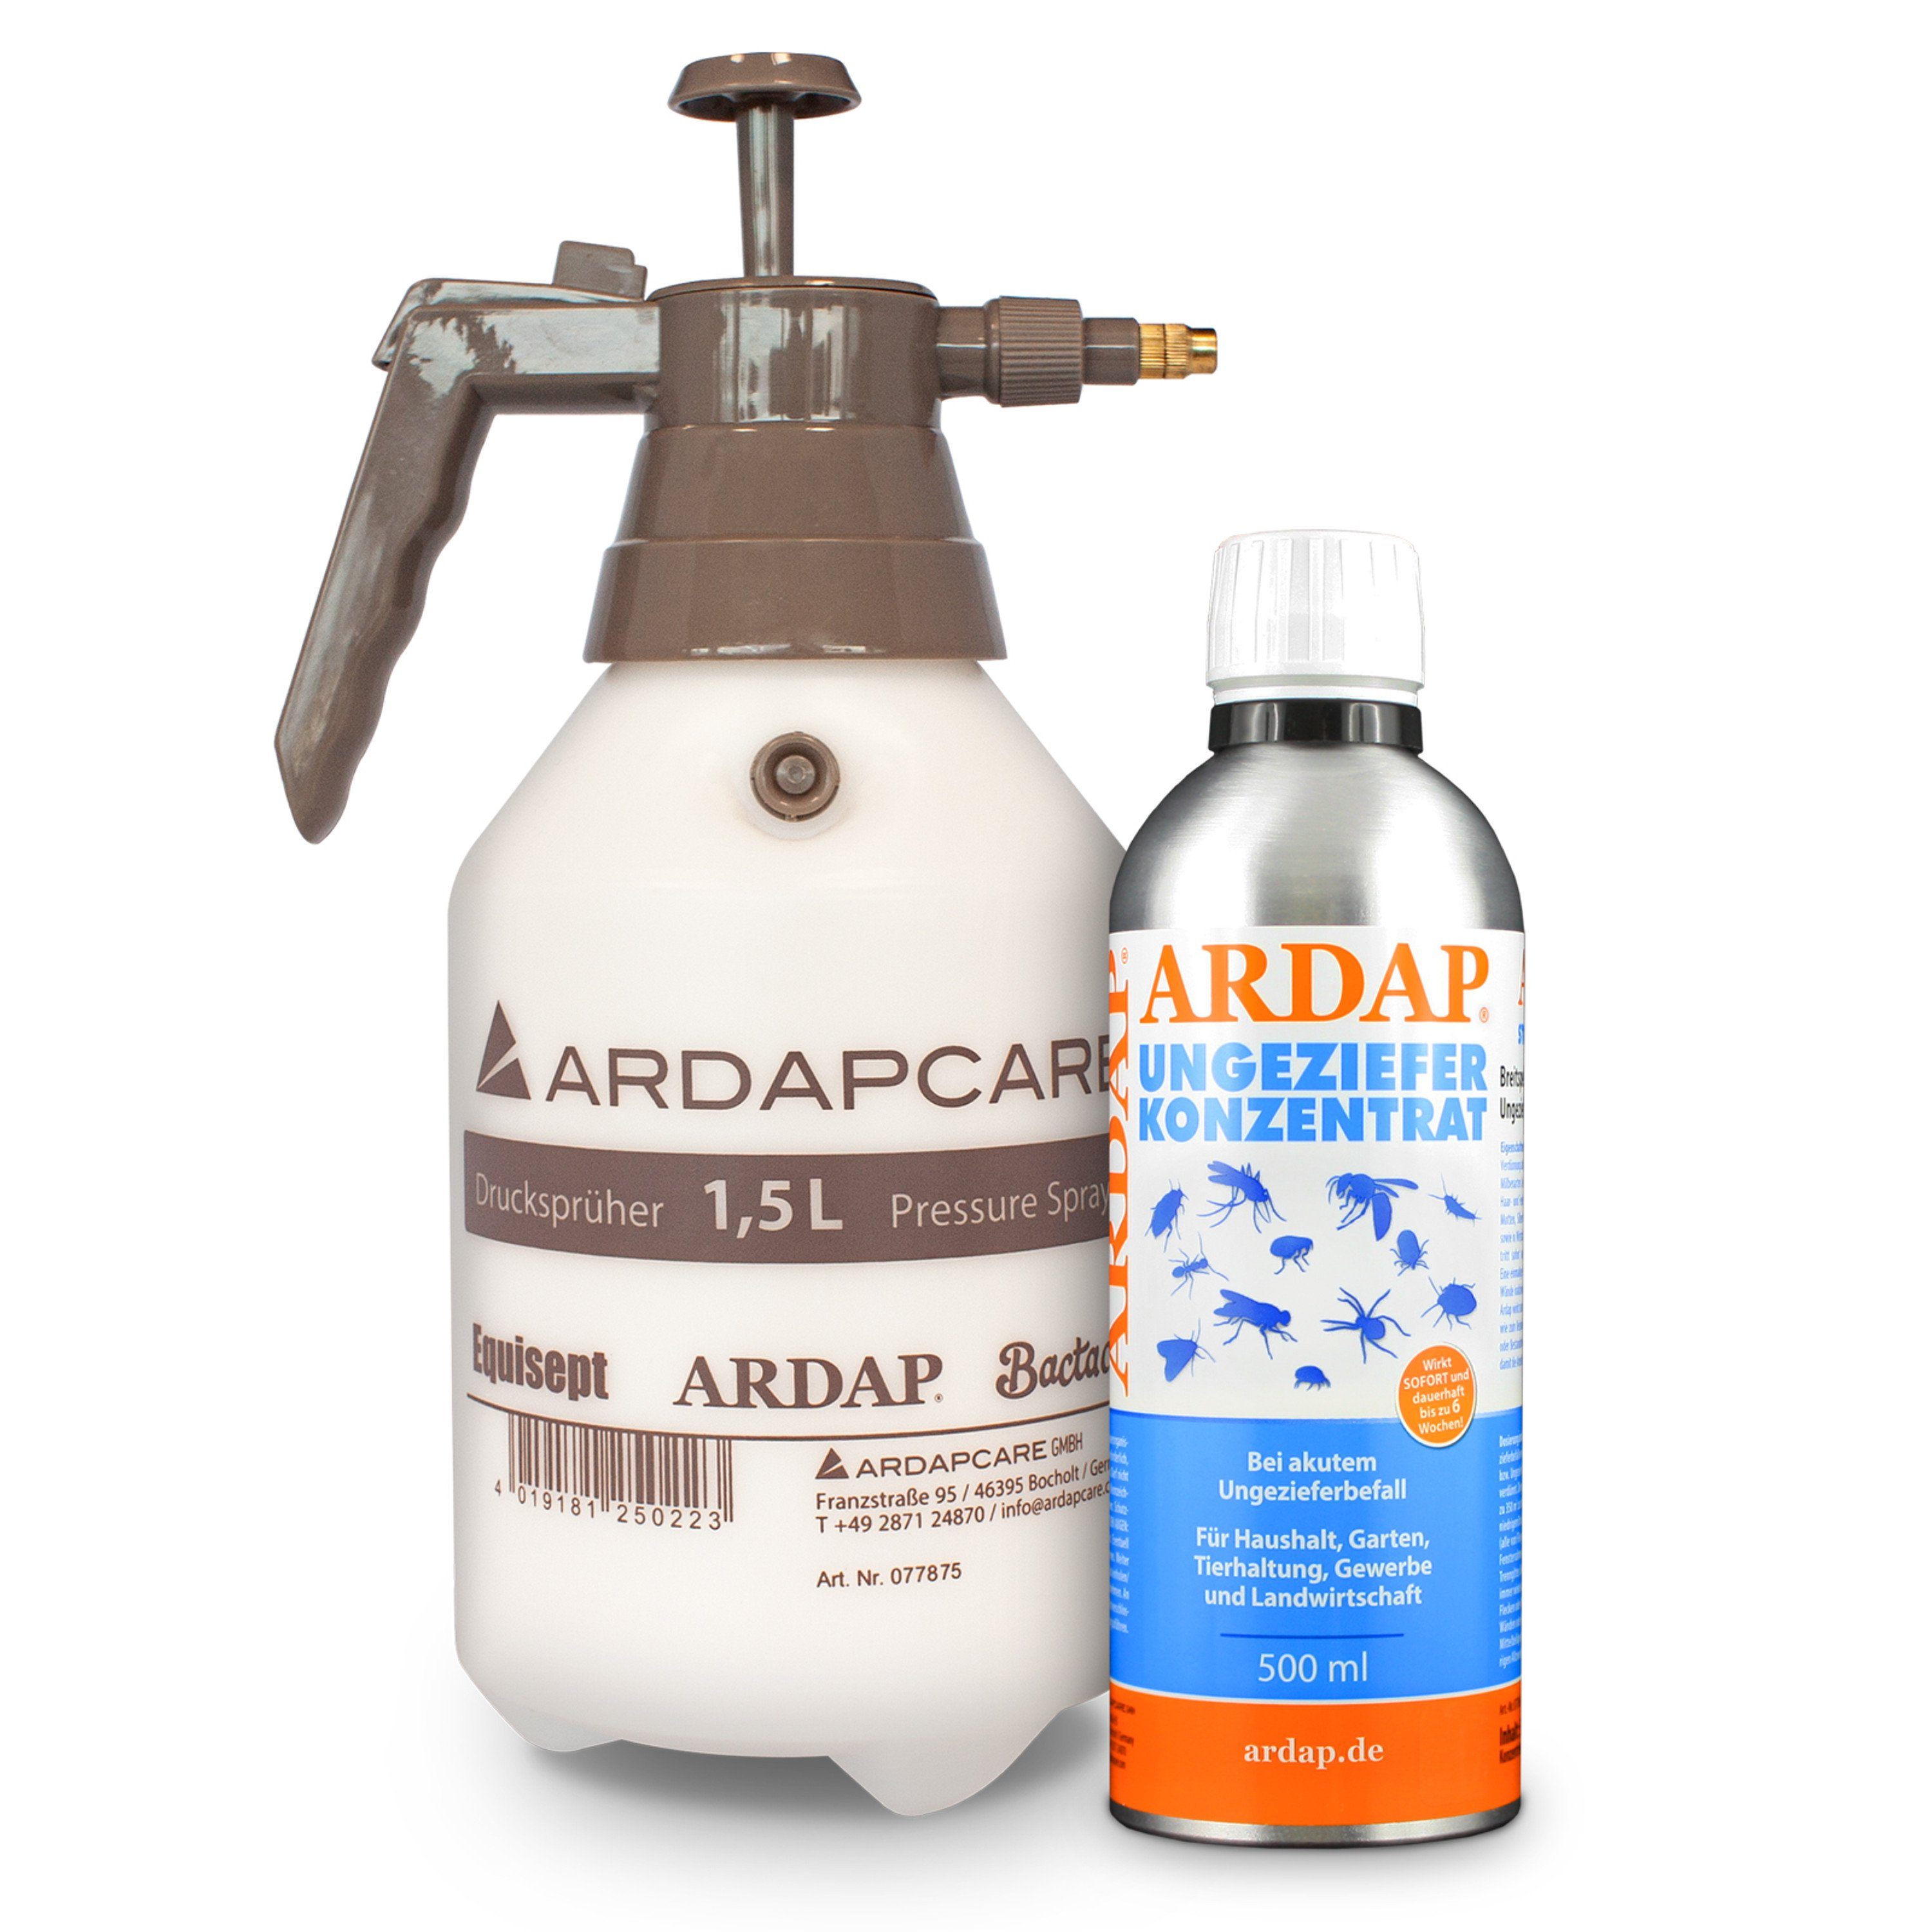 Ardap Insektenspray Ardap Konzentrat 500ml Ardap 1,5L Drucksprüher incl. für das Konzentrat